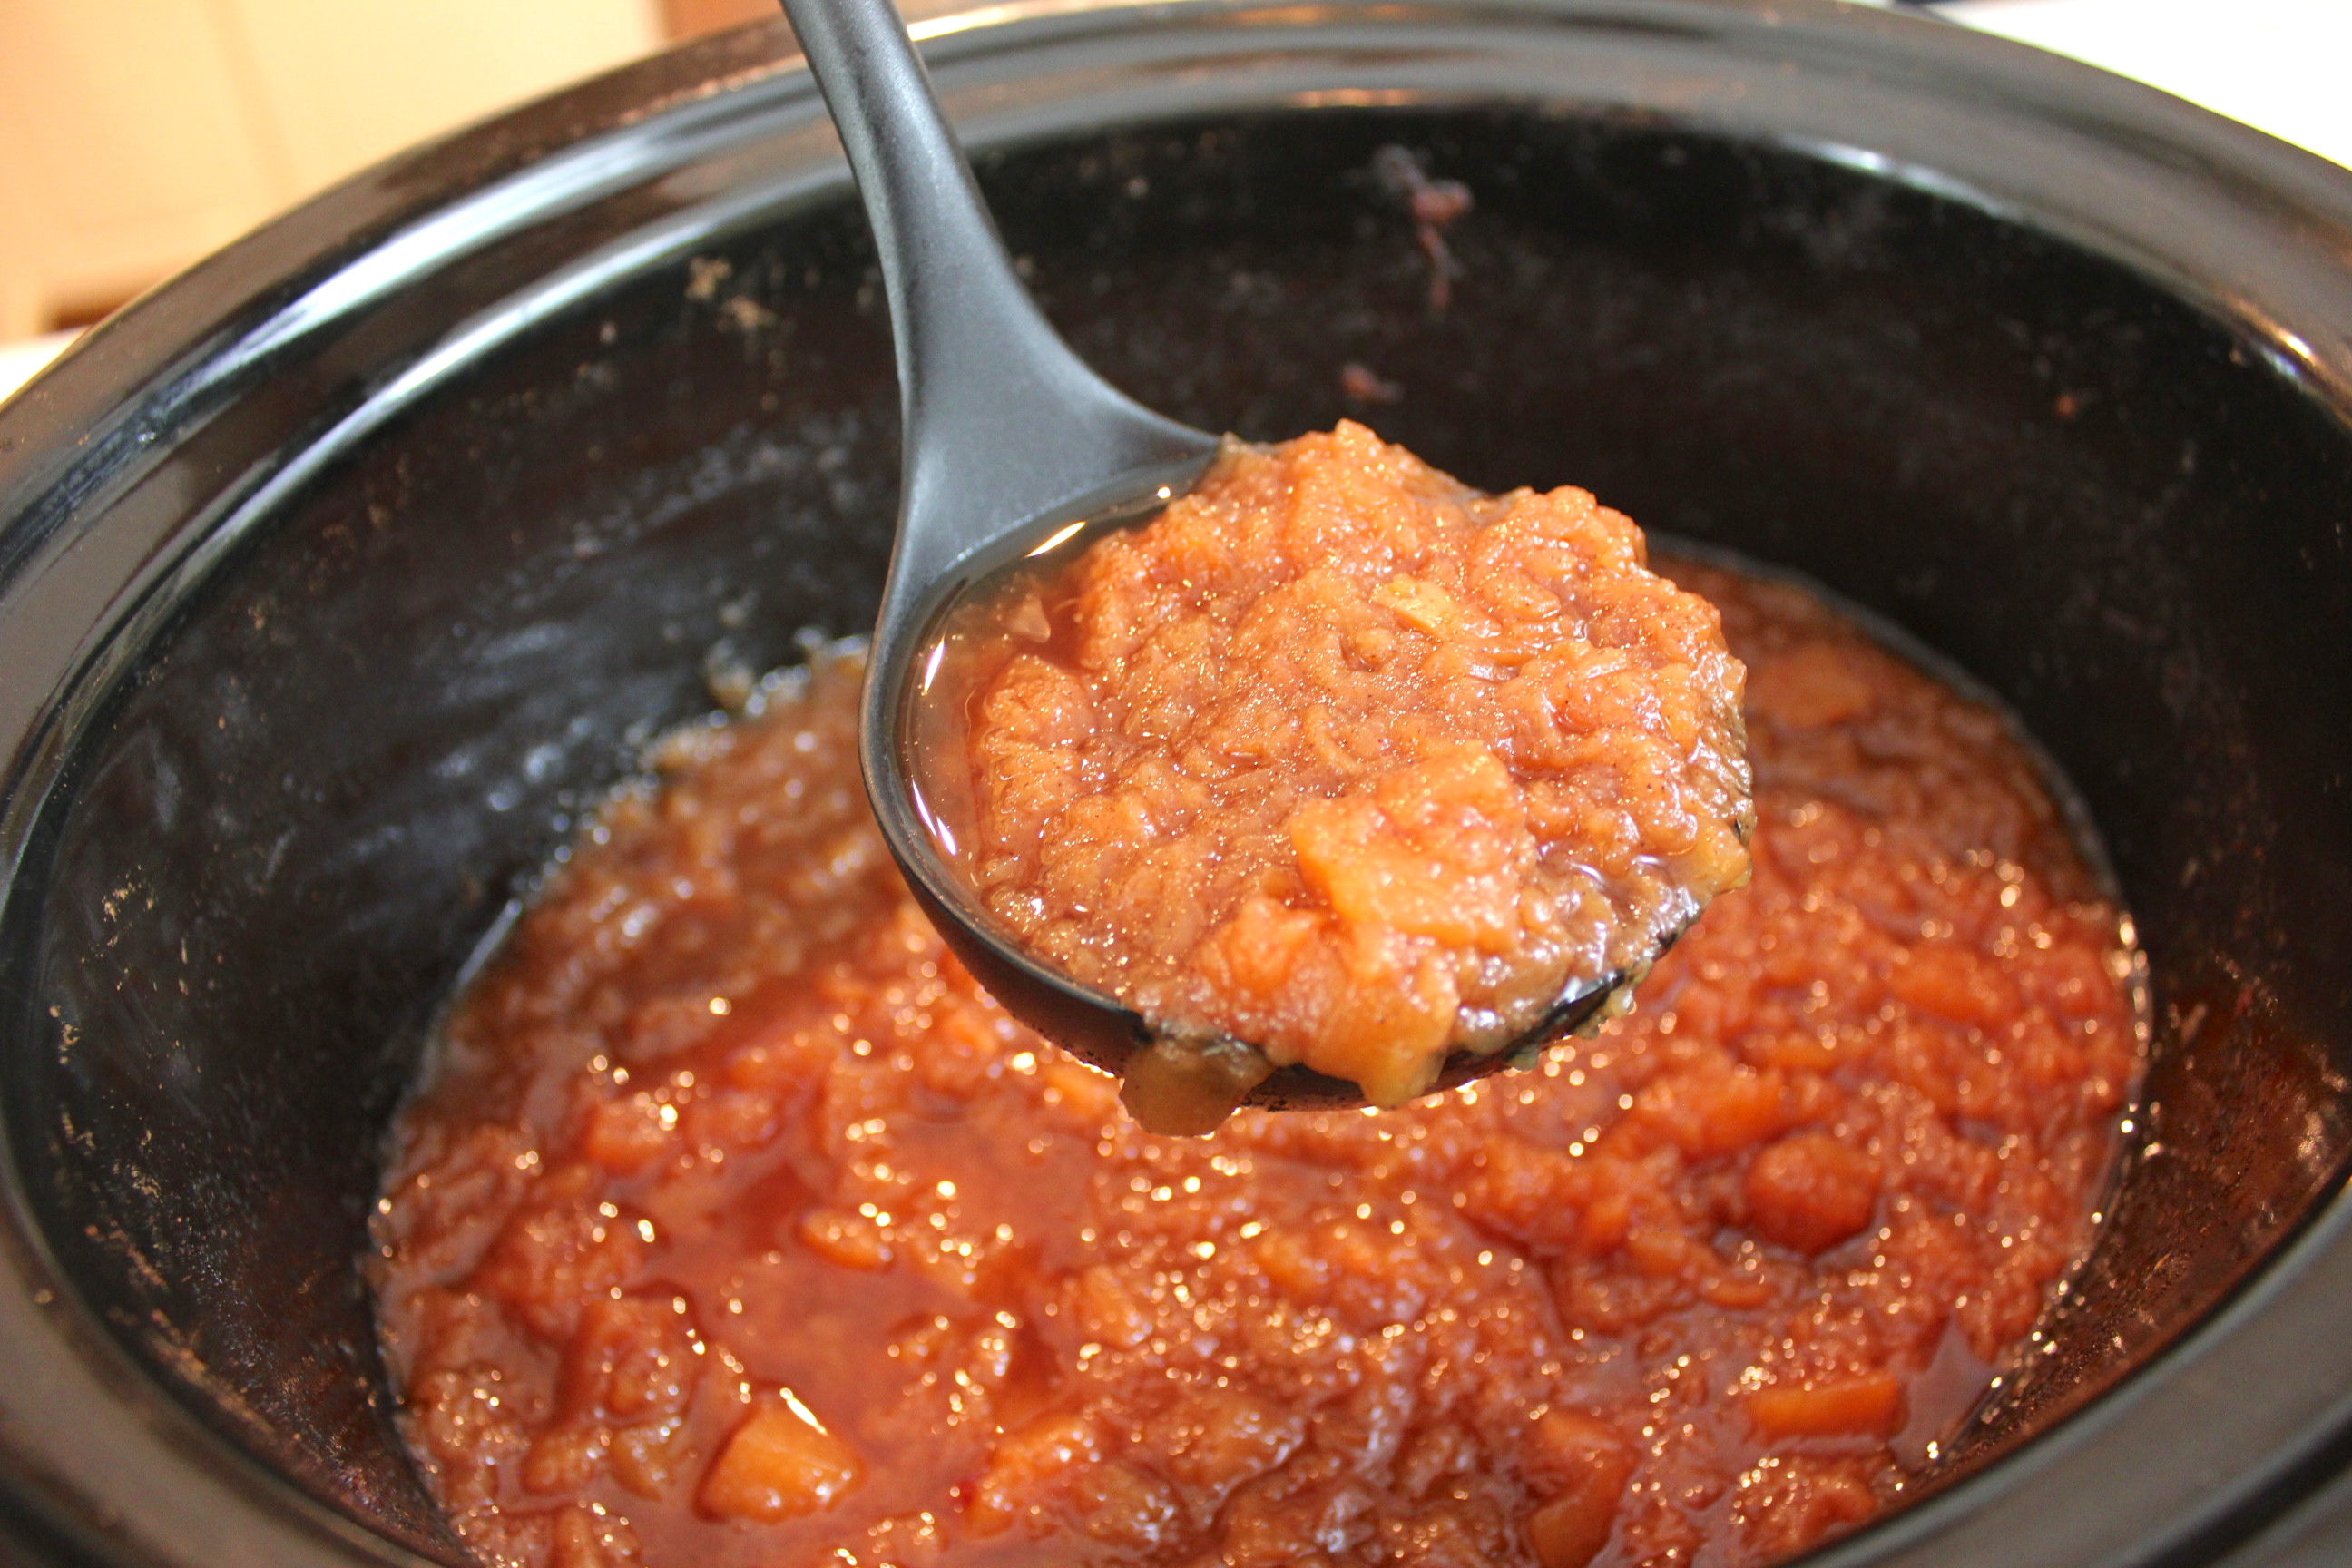 Homemade Crockpot Applesauce